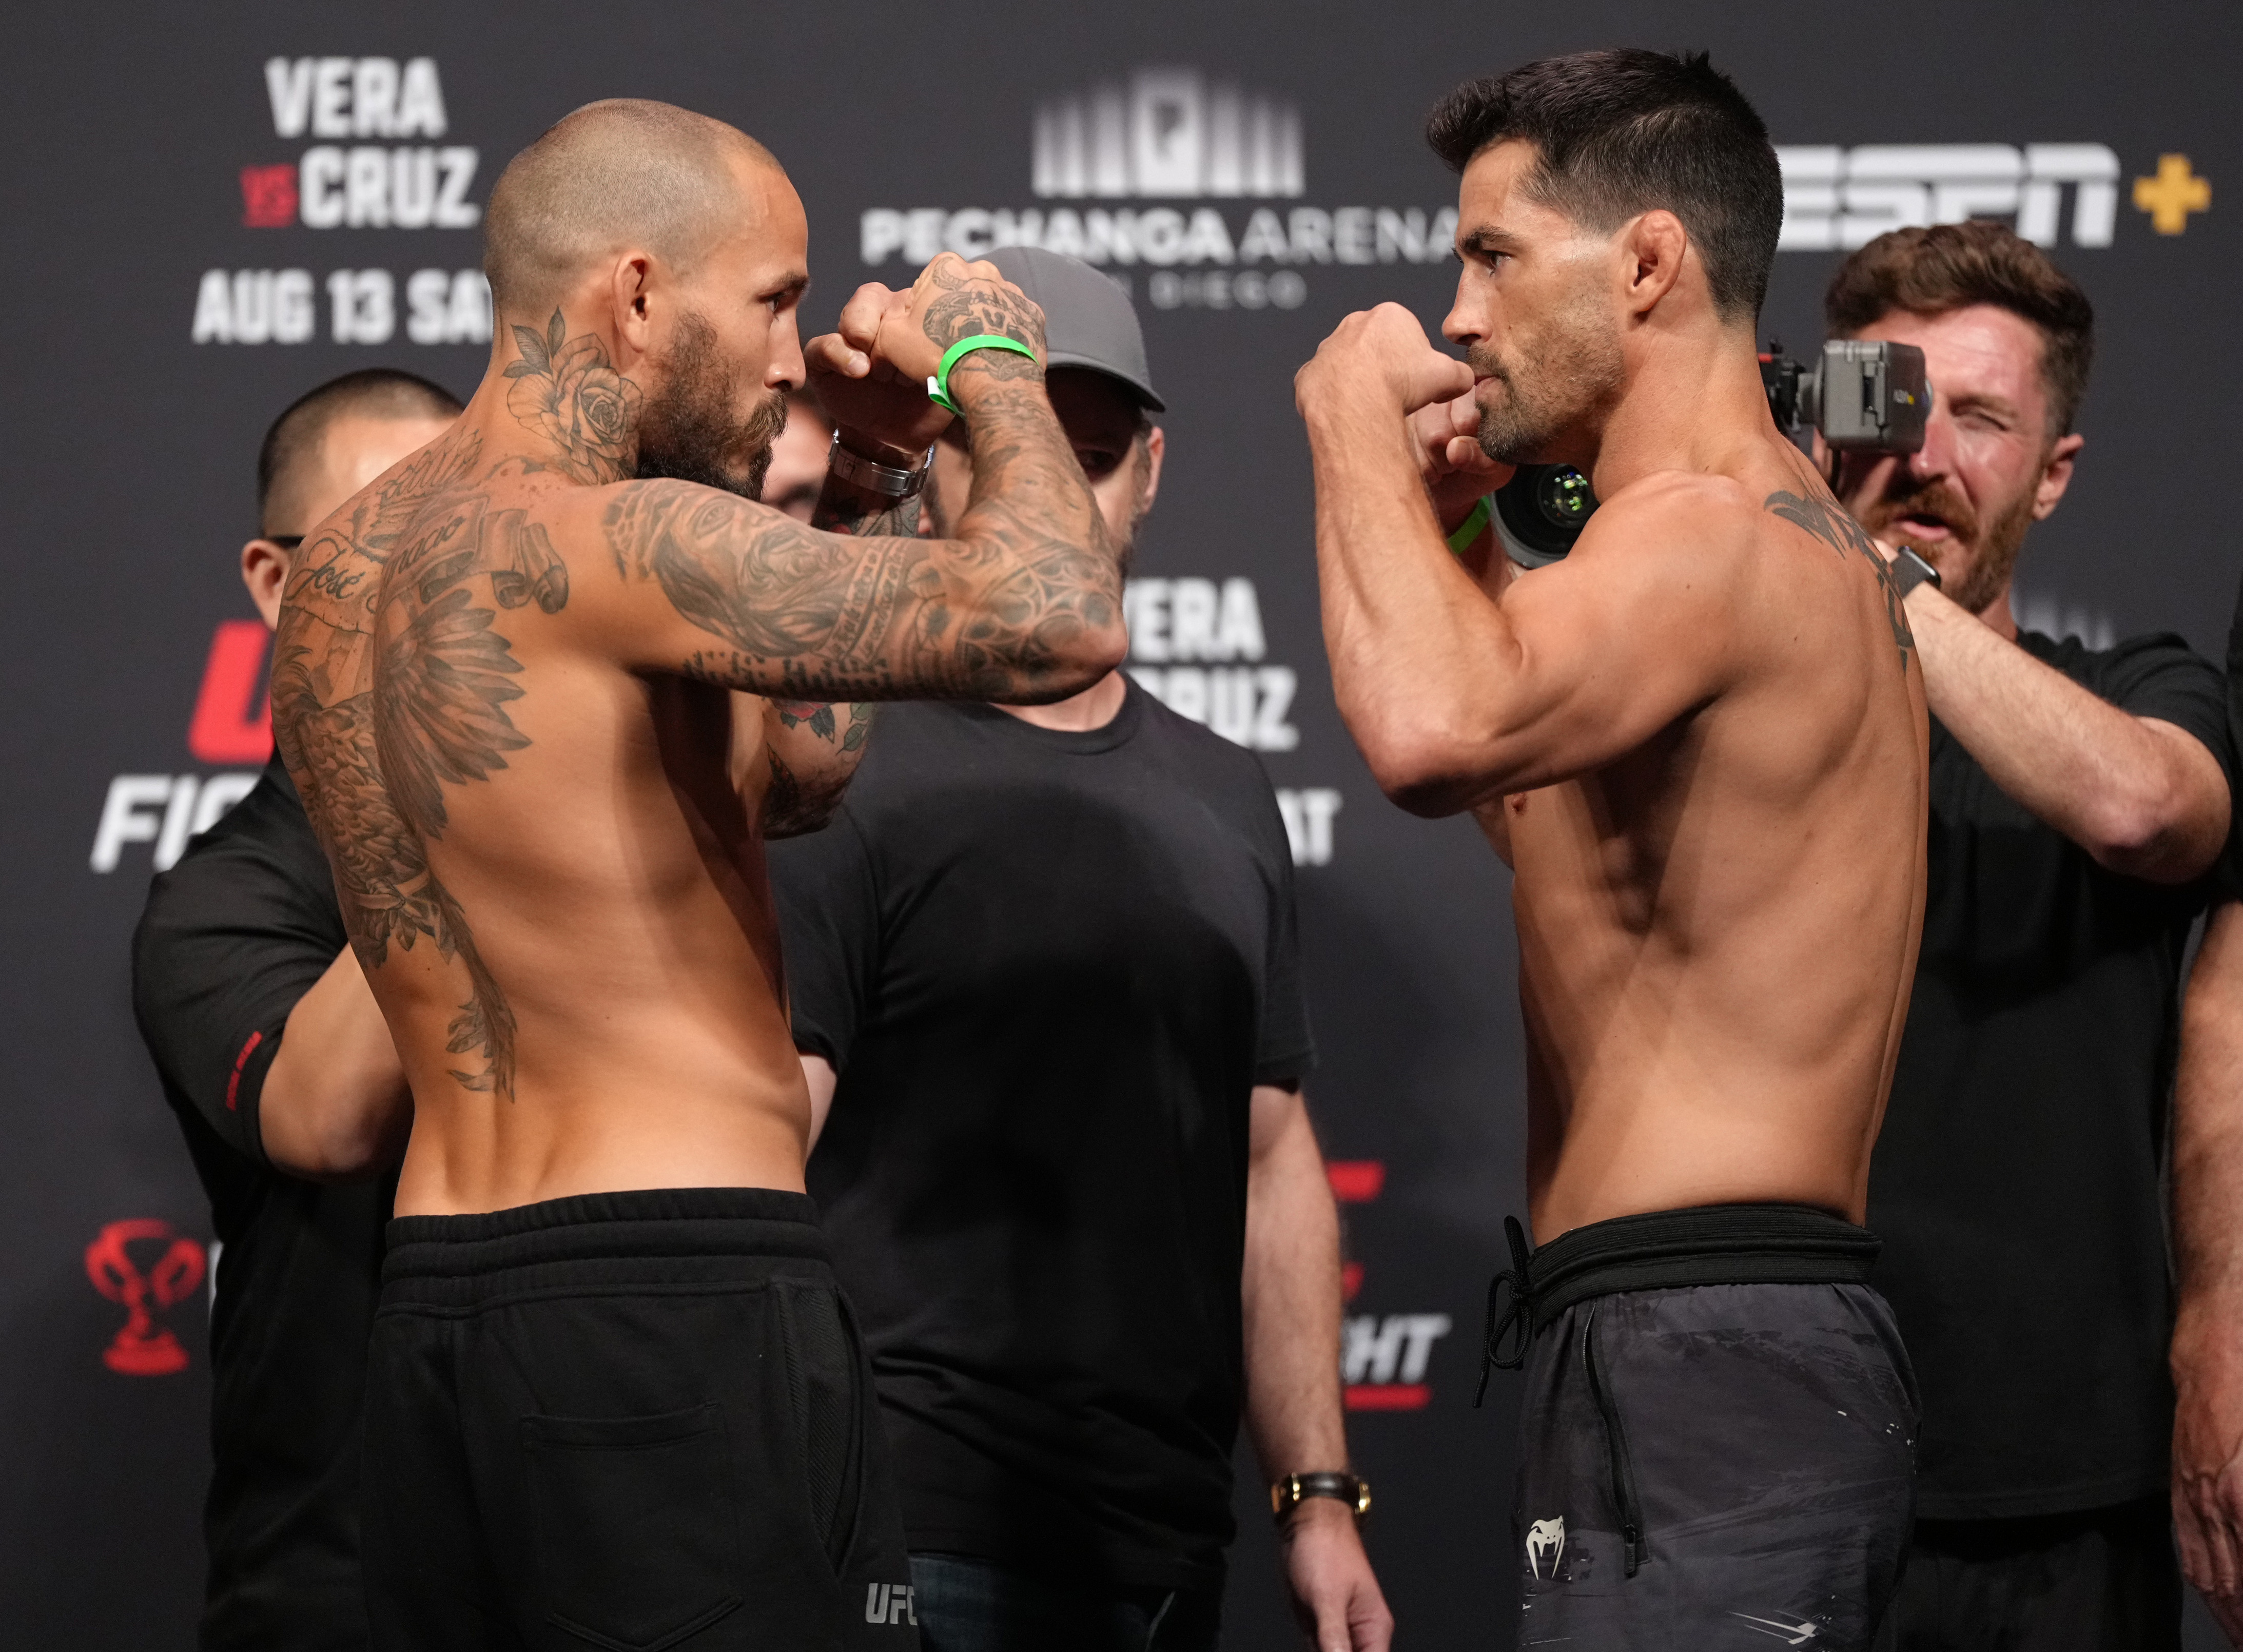 UFC Fight Night: Vera v Cruz Ceremonial Weigh-in